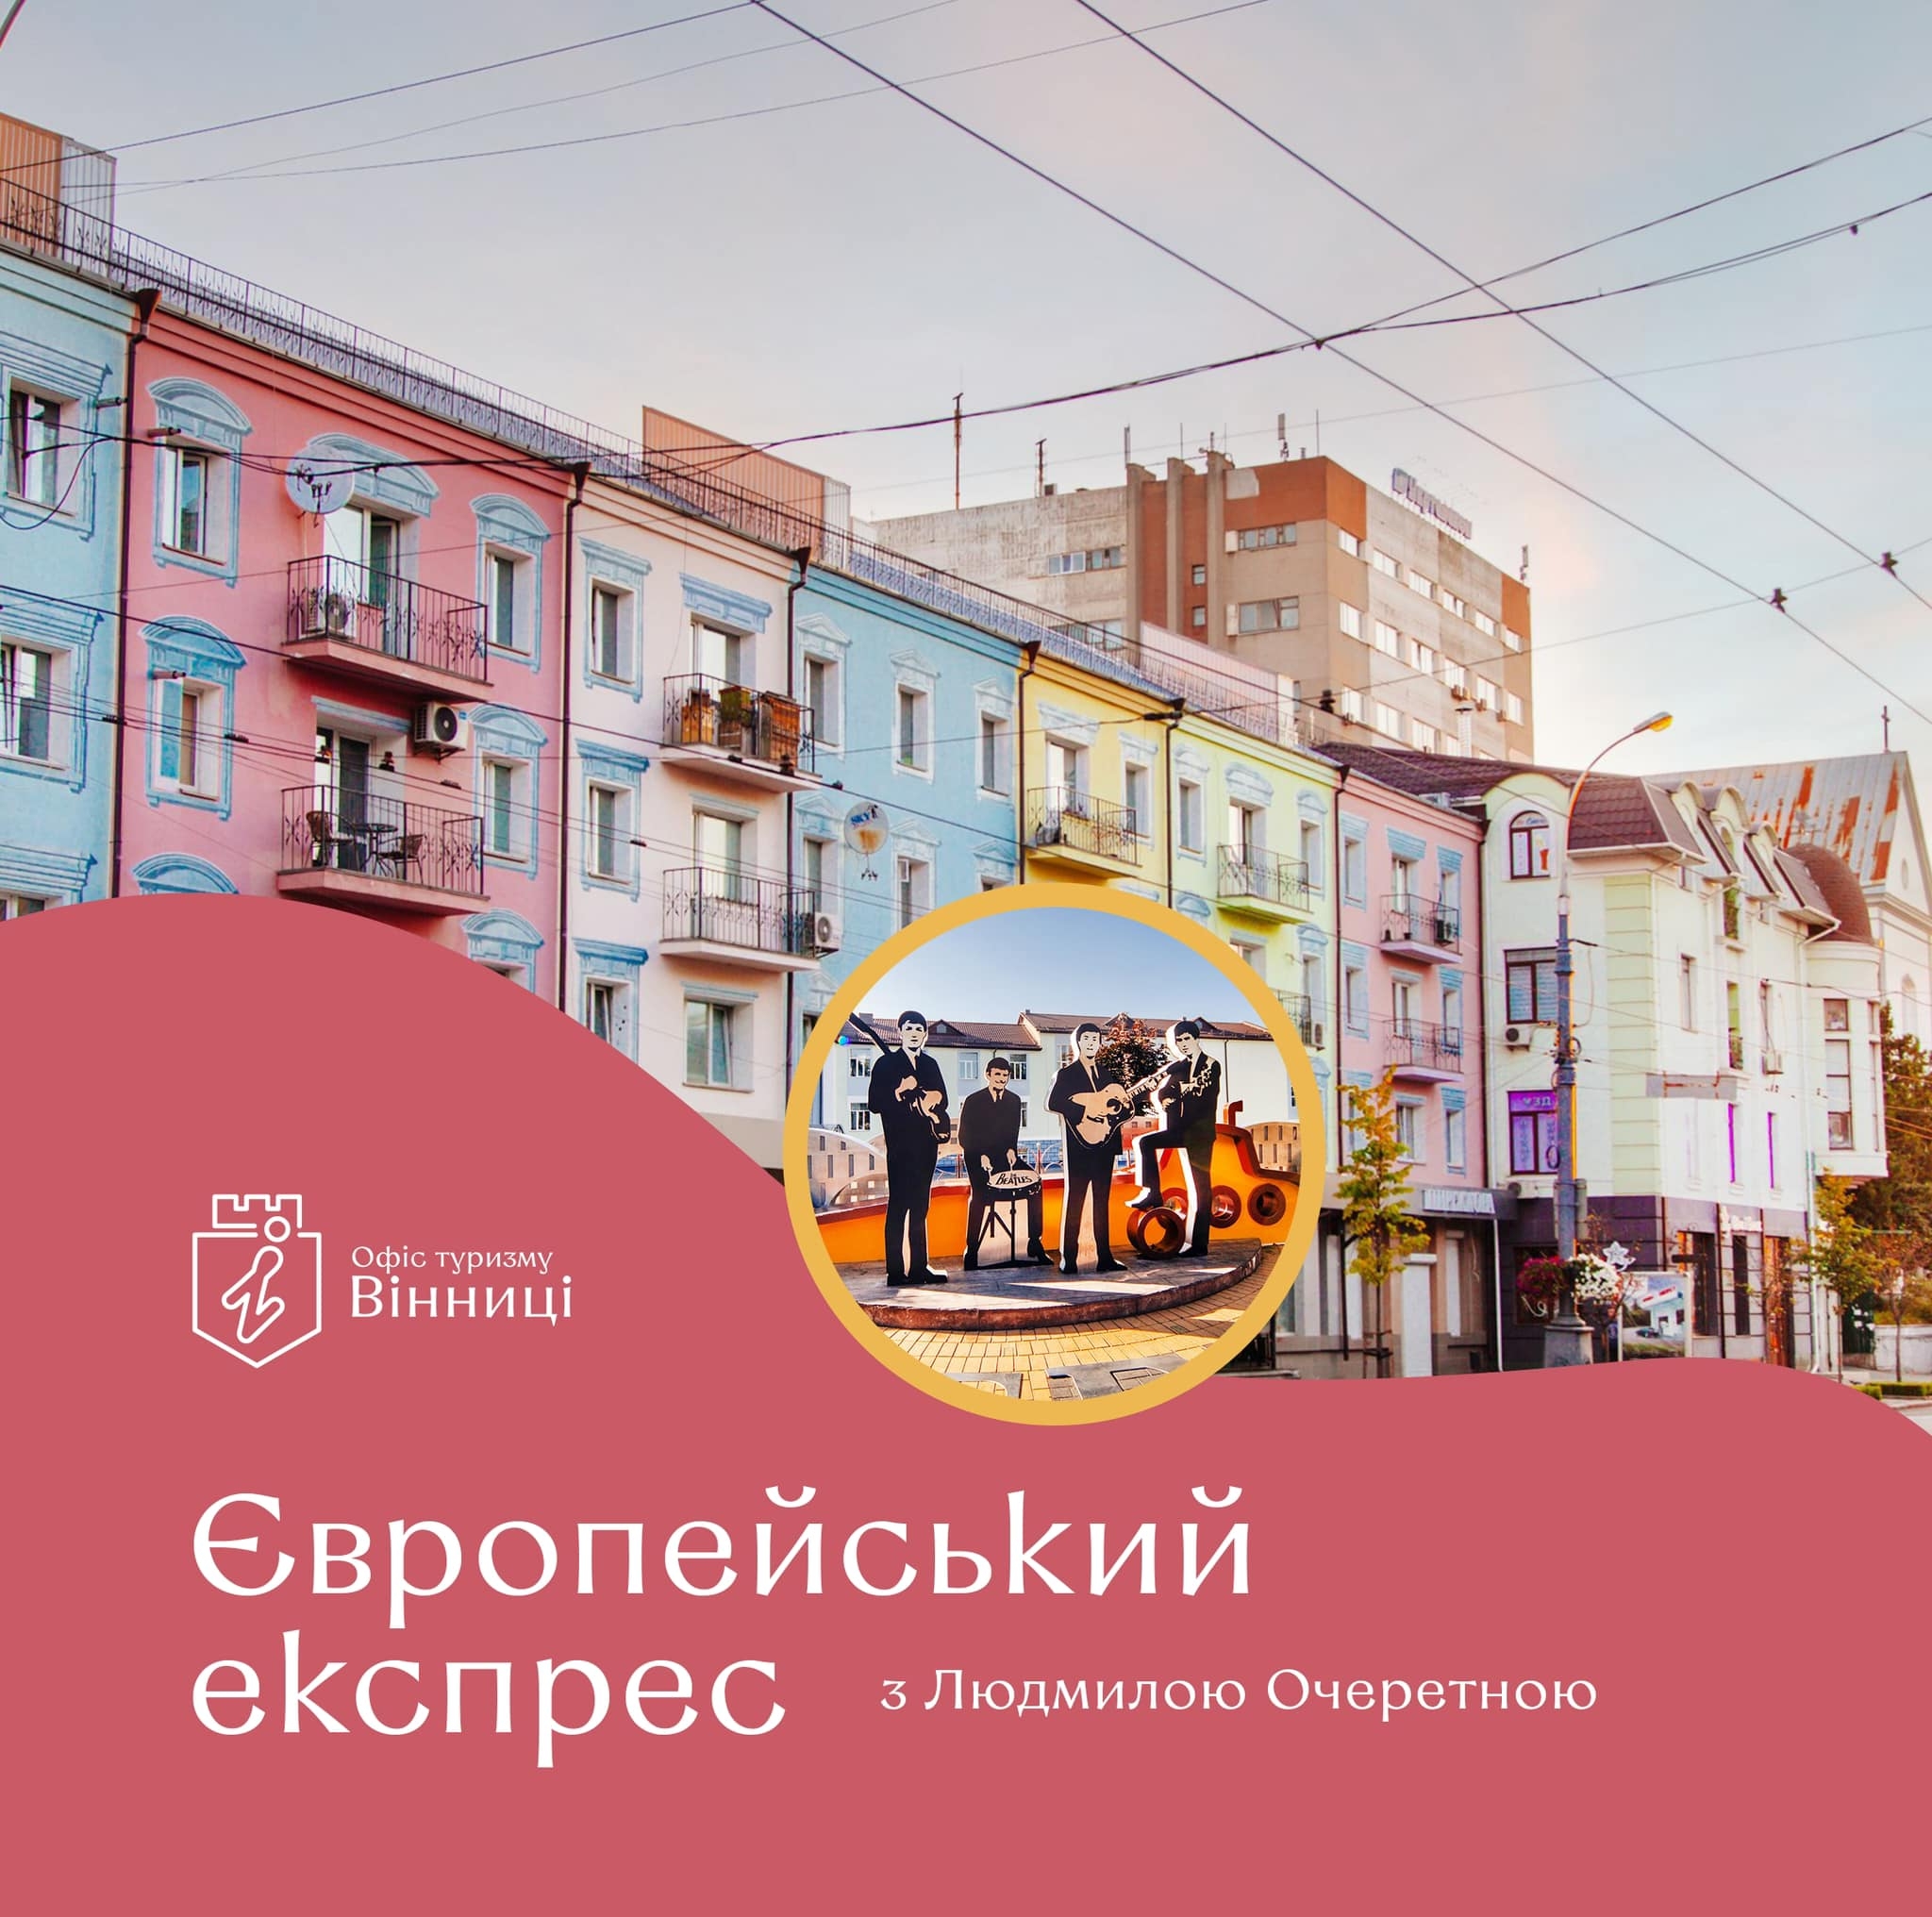 Вінничан запрошують на екскурсію містом Європейський експрес